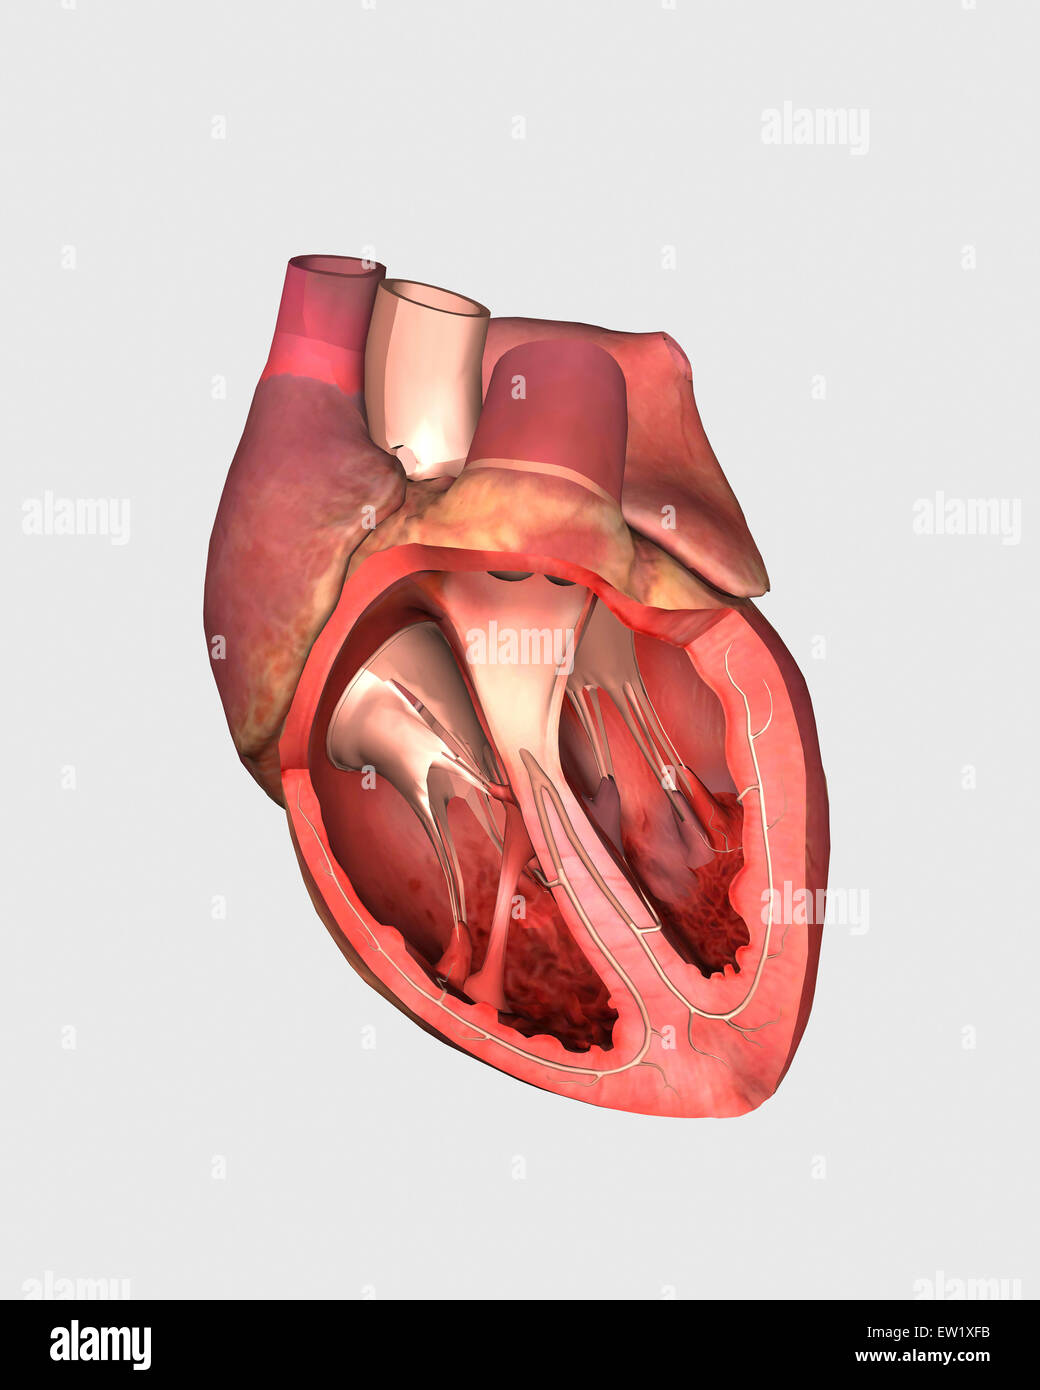 Le valvole cardiache che mostra la valvola polmonare e la valvola mitrale e tricuspide. Foto Stock